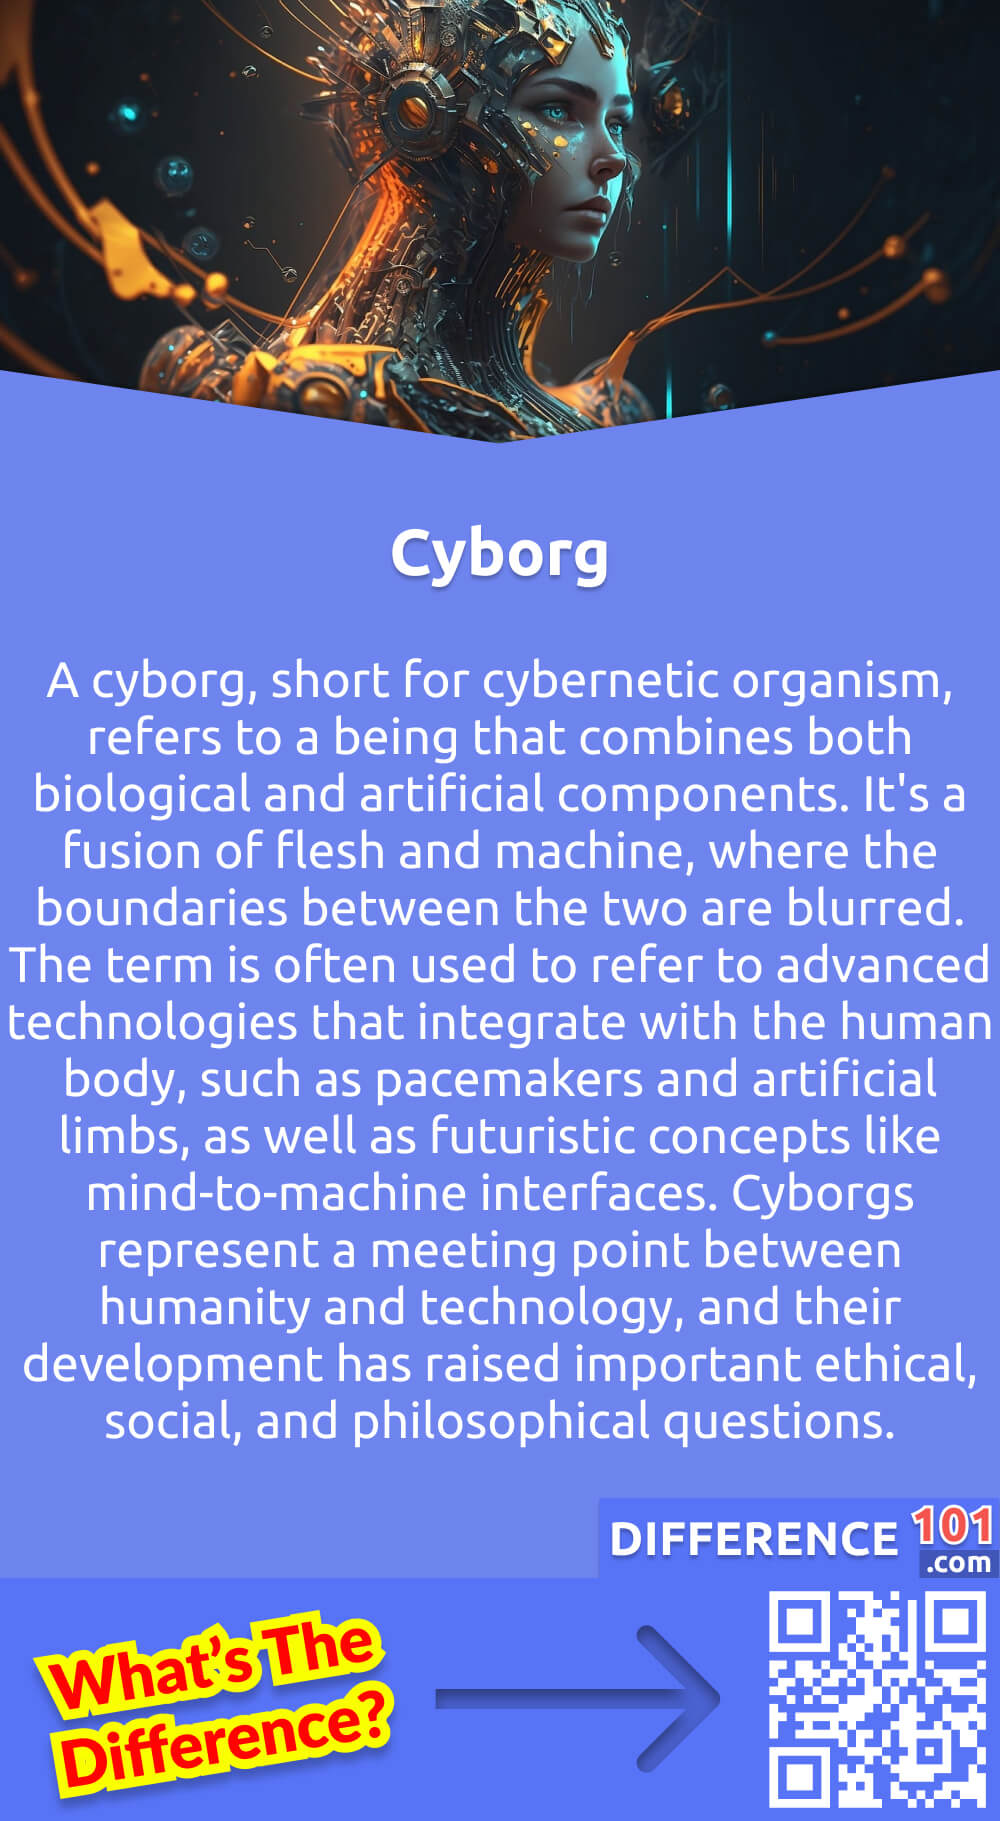 Was ist ein Cyborg? Ein Cyborg, kurz für kybernetischer Organismus, ist ein Wesen, das sowohl biologische als auch künstliche Komponenten in sich vereint. Es handelt sich um eine Verschmelzung von Fleisch und Maschine, bei der die Grenzen zwischen beiden verwischt sind. Der Begriff wird häufig für fortschrittliche Technologien verwendet, die sich in den menschlichen Körper integrieren, wie z. B. Herzschrittmacher und künstliche Gliedmaßen, sowie für futuristische Konzepte wie Mind-to-Machine-Schnittstellen. Cyborgs stellen eine Schnittstelle zwischen Mensch und Technik dar, und ihre Entwicklung hat wichtige ethische, soziale und philosophische Fragen aufgeworfen. In dem Maße, in dem wir unser biologisches Selbst mit fortschrittlicher Technologie verschmelzen, entwickelt sich das Konzept des Menschseins rasch weiter.